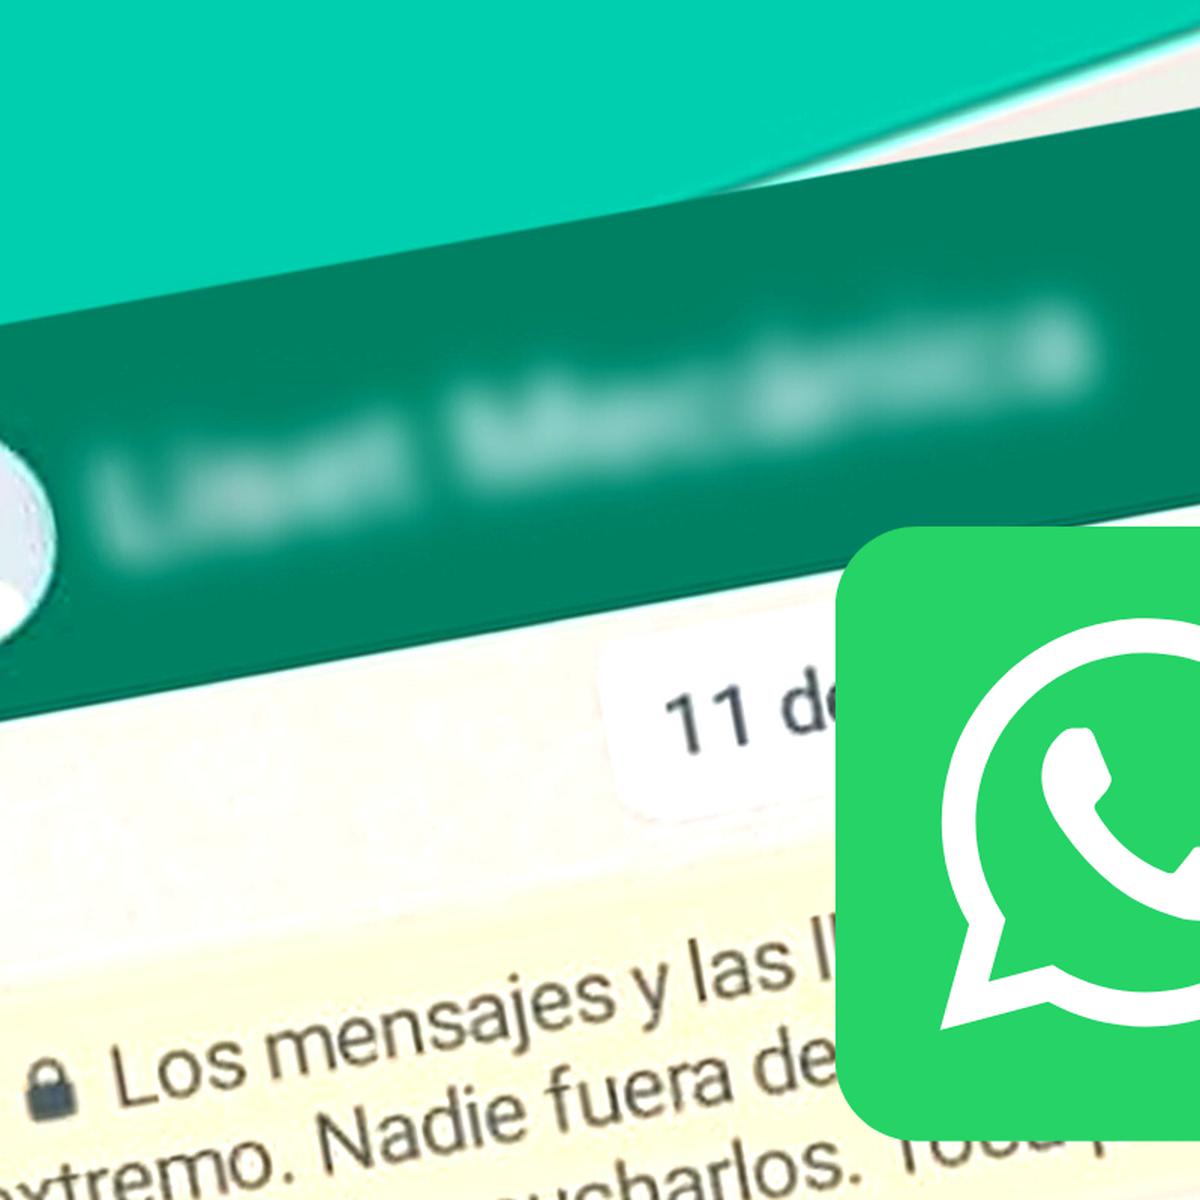 WhatsApp: enviar mensajes sin guardar el número es posible - Moda